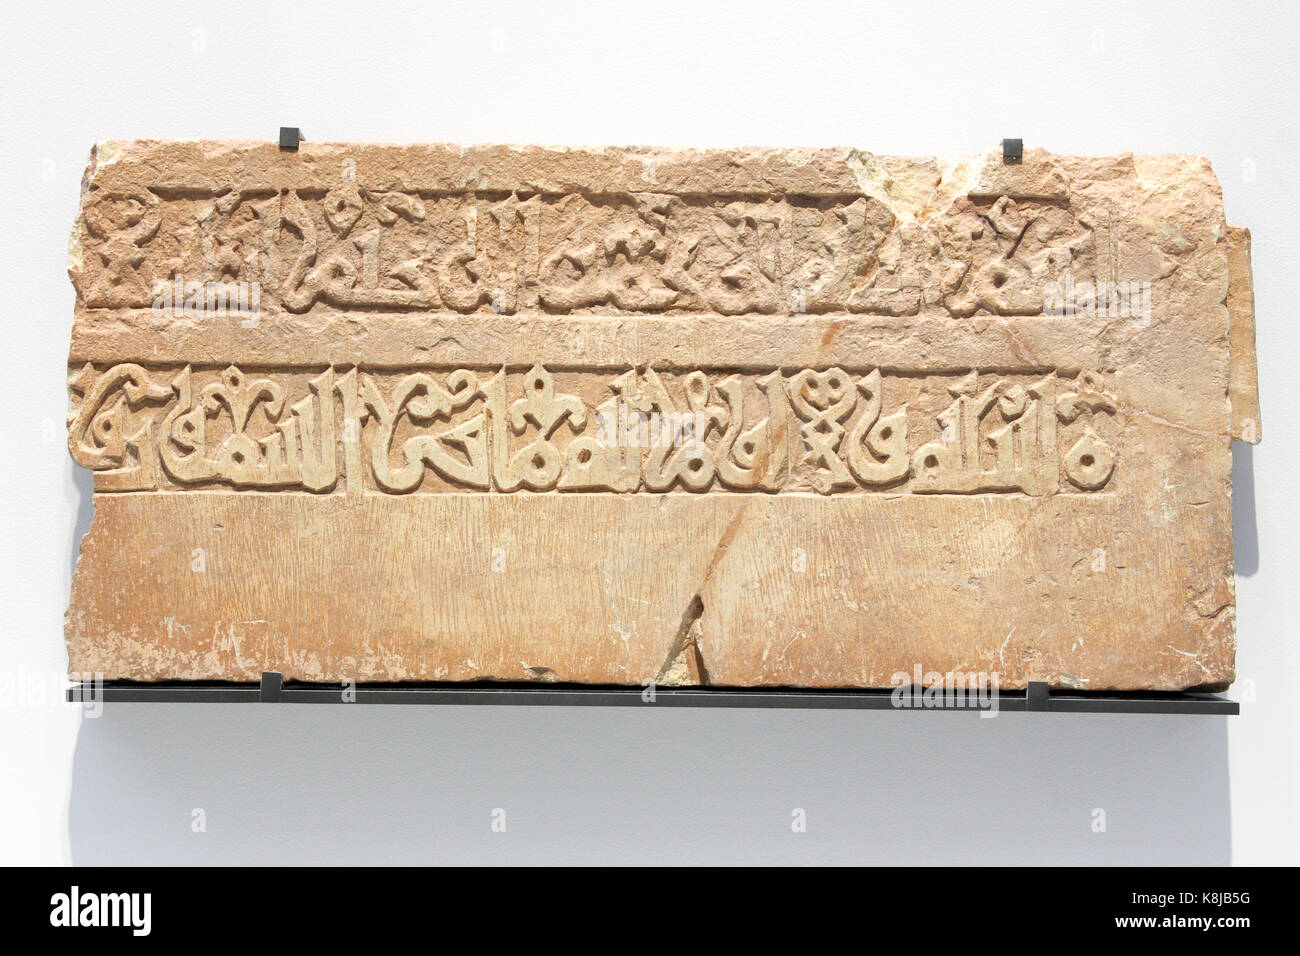 Fragmento de friso arquitectónico: Inscripción qu'ranic en el guión árabe angular. Raqqa, Siria. Piedra caliza. 1100-1200 DC. Foto de stock